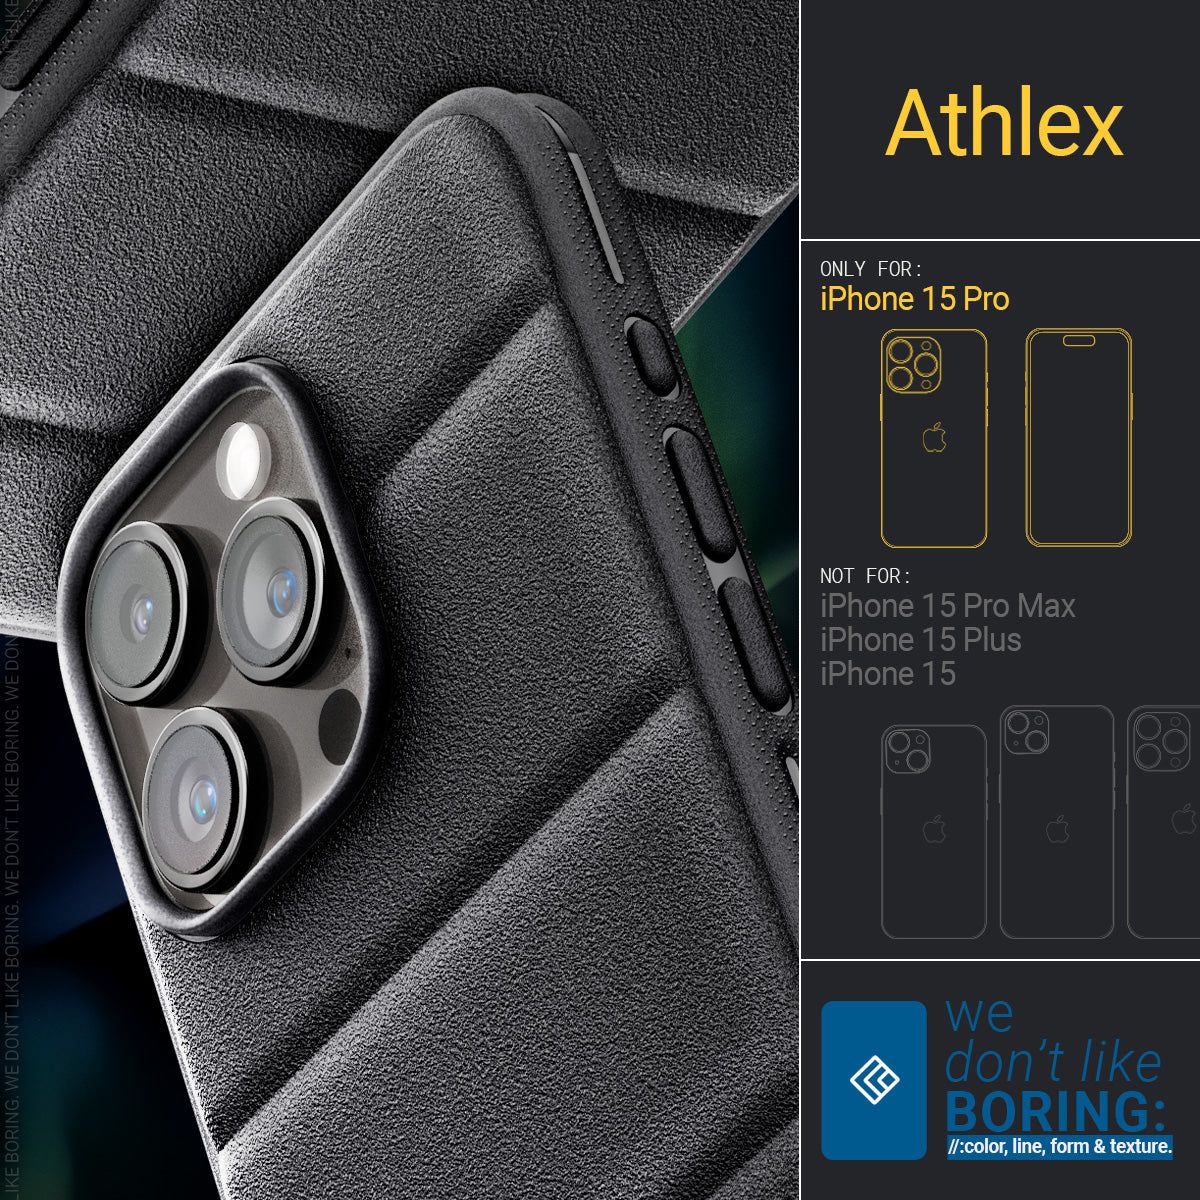  Ốp lưng iPhone 15 Pro Max SPIGEN Athlex Active 